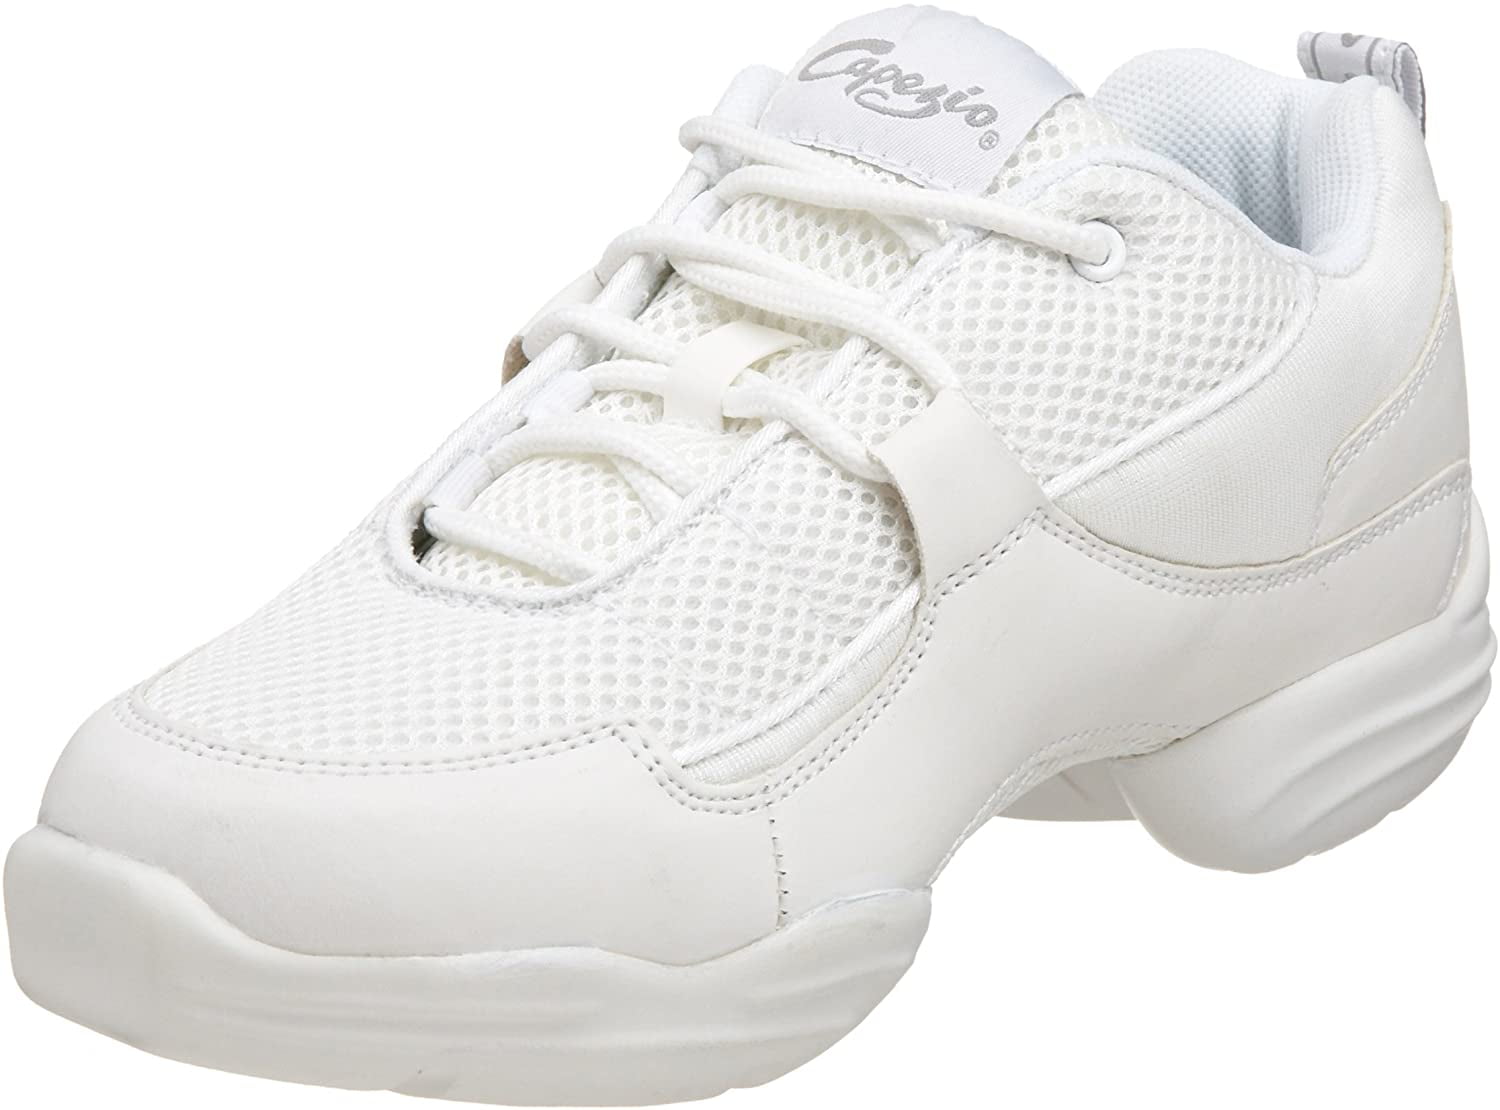 DS11 Fierce Dance Sneaker,White 